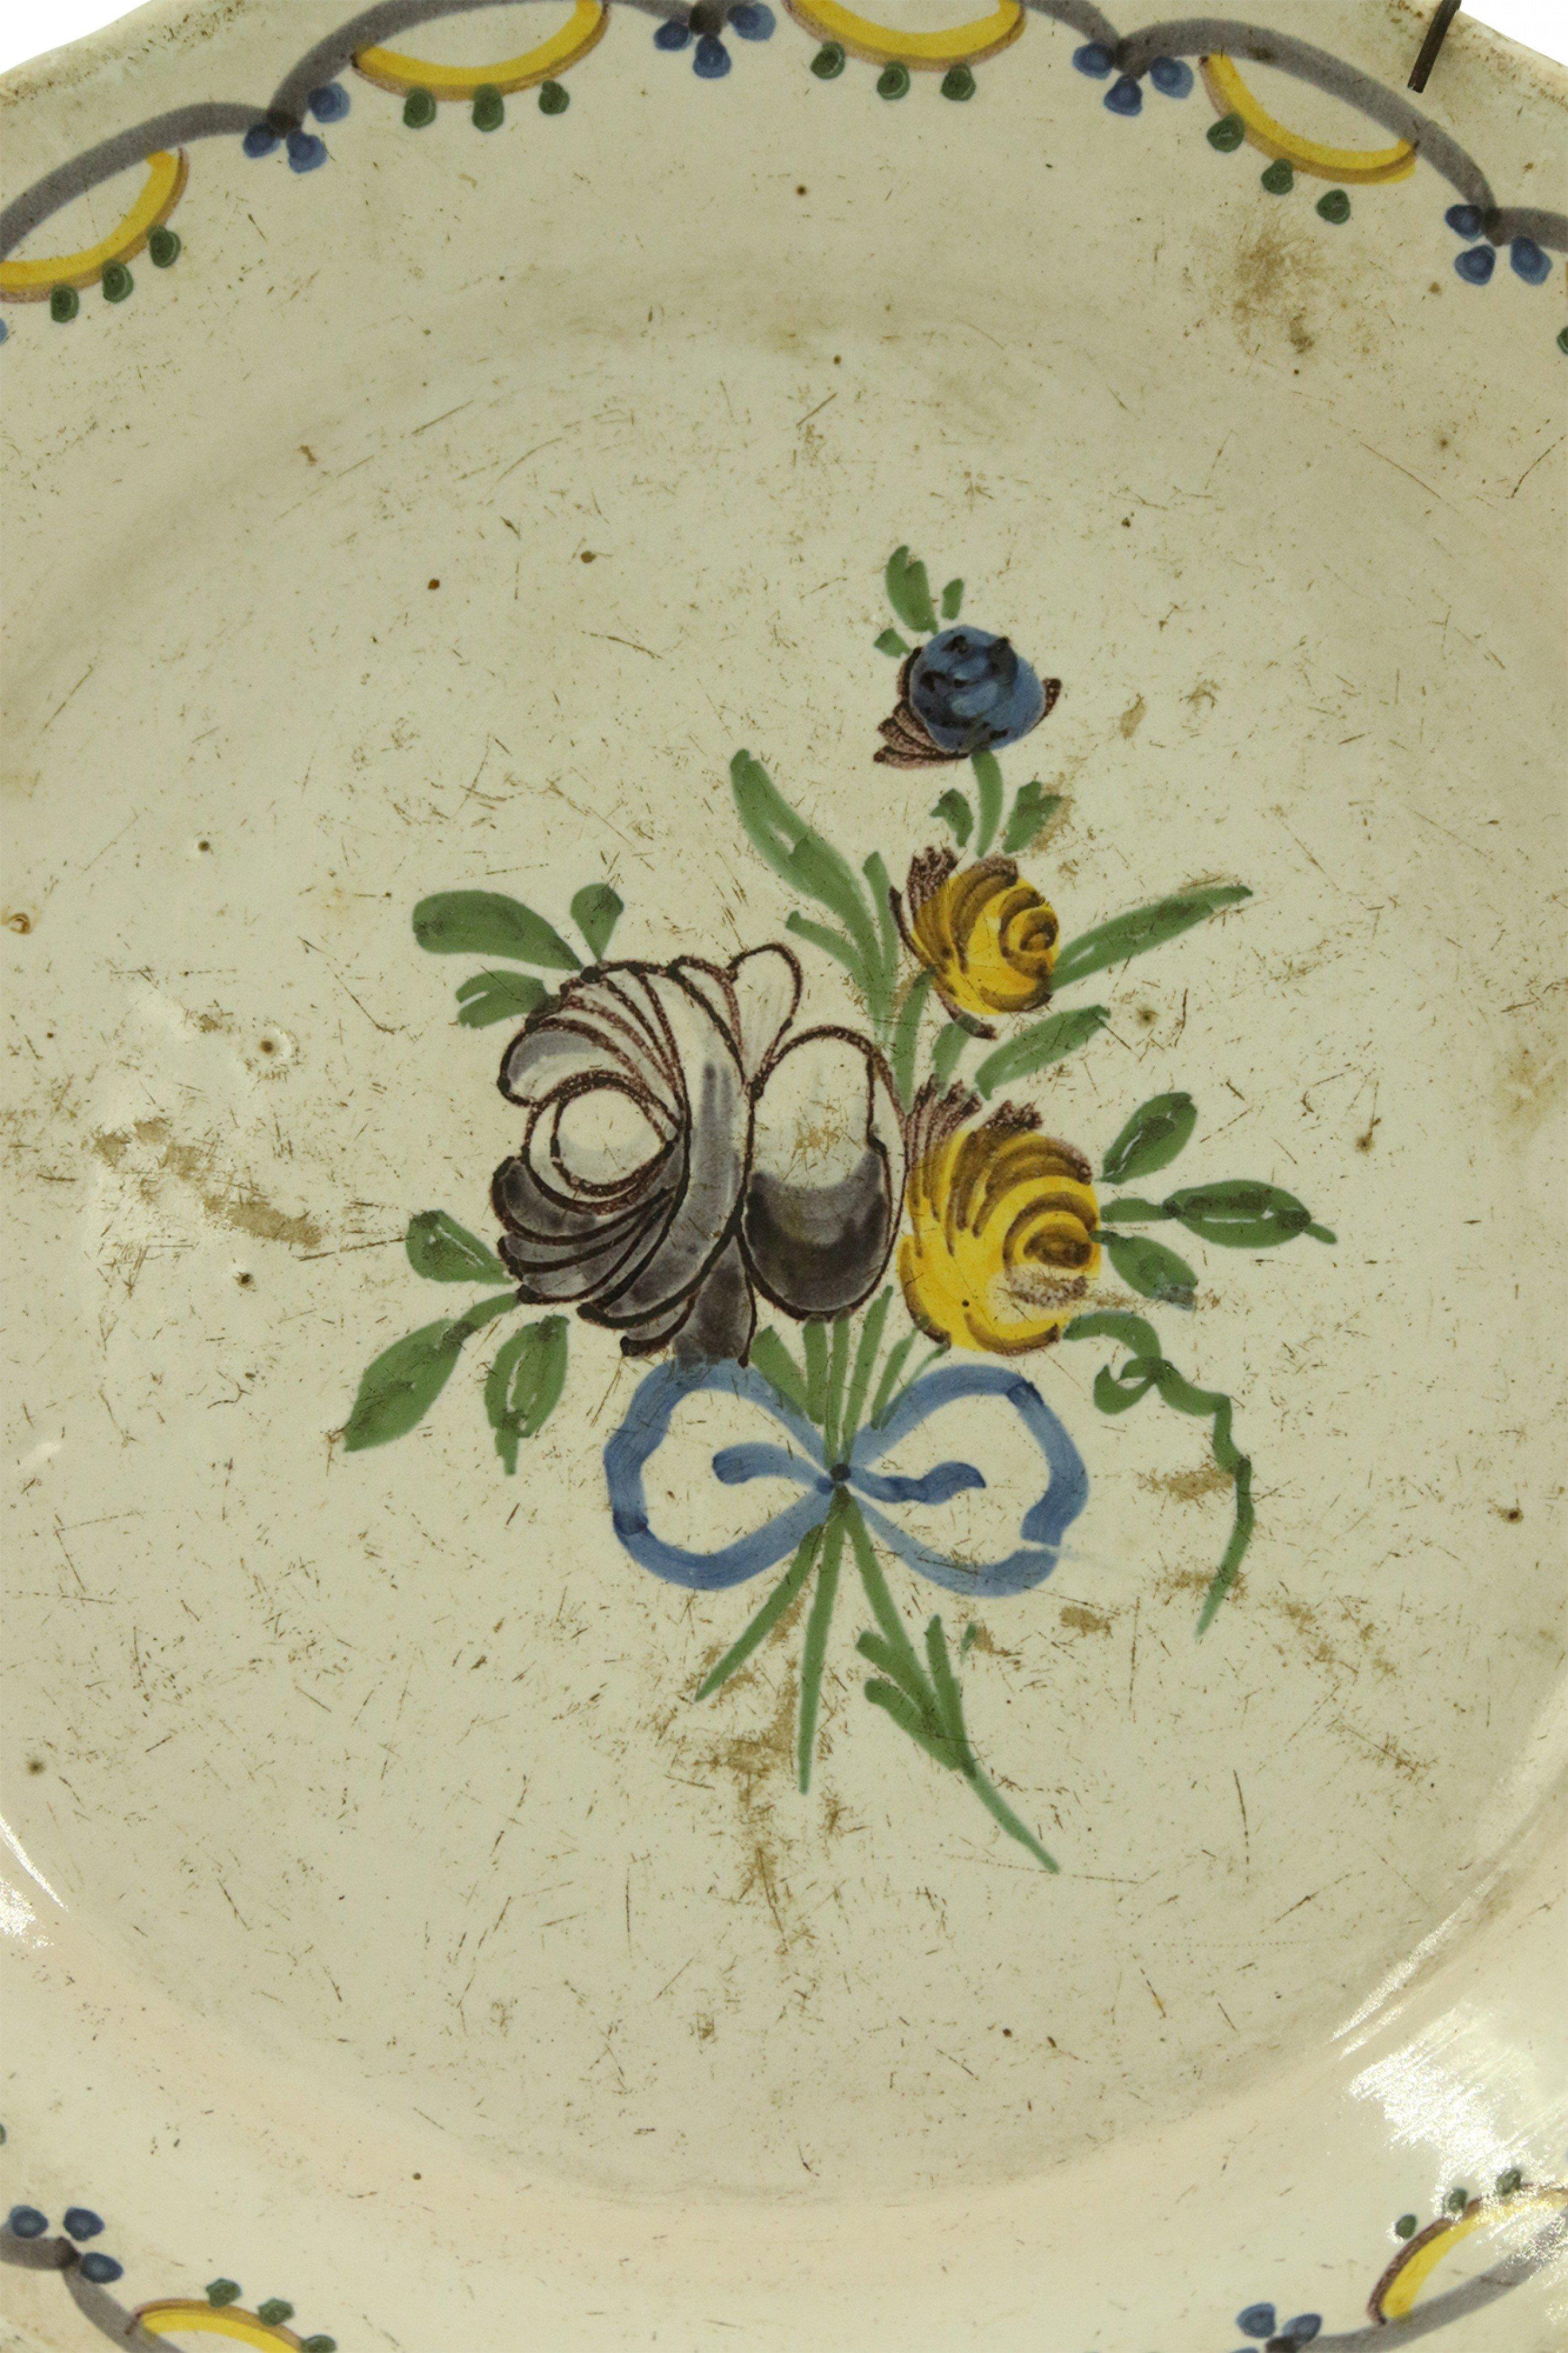 Assiette en faïence de Nevers (XVIIIe siècle), de style provincial français, avec au centre une gerbe de fleurs et un bord festonné avec une bordure peinte à la main en bleu et jaune.
    